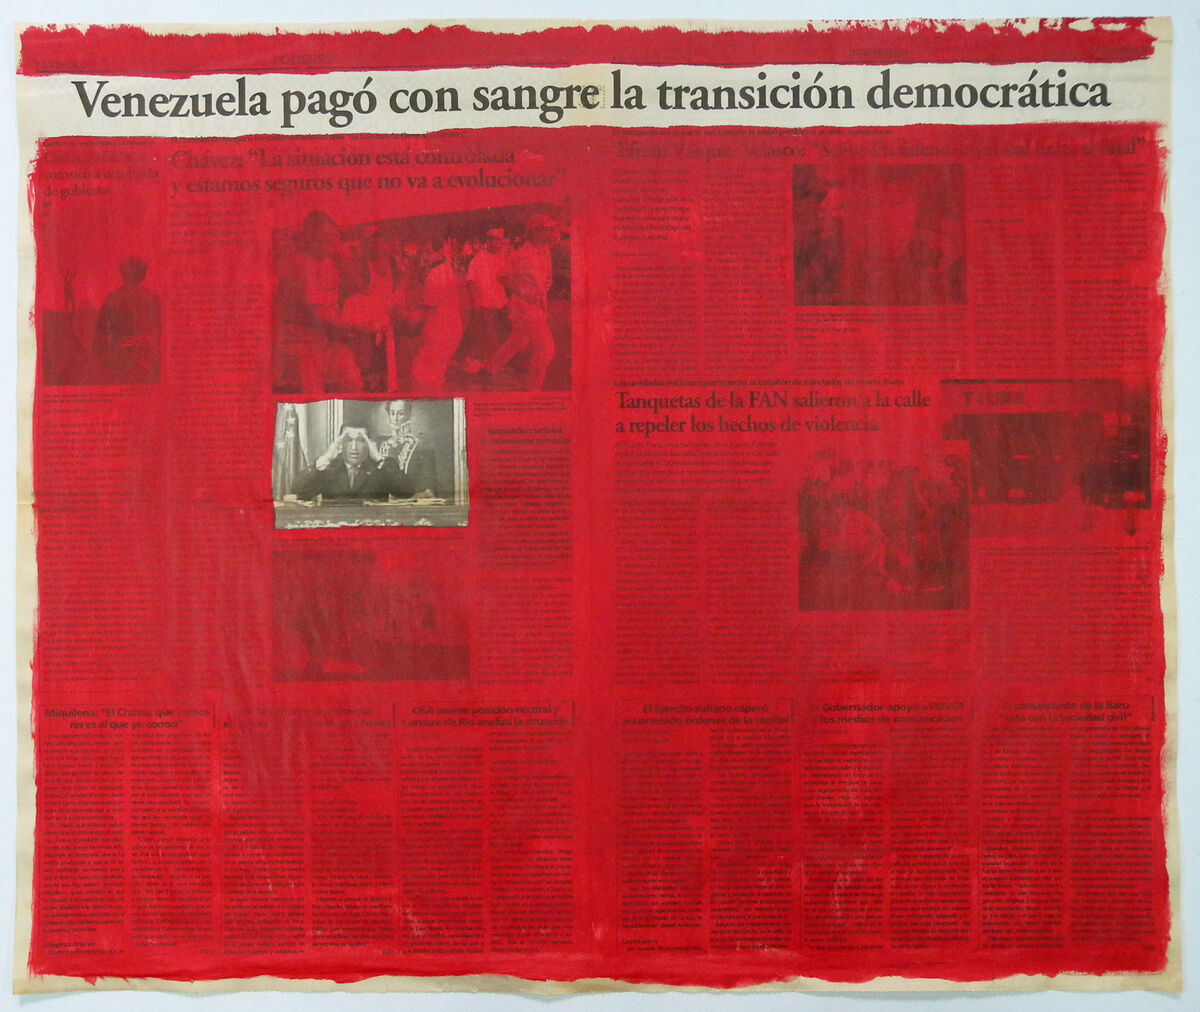 Marco Montiel-Soto, Serie La verdad no es noticia, 2016. Acrylic on newspaper. 57.5 x 68.5 cm. Courtesy of Gallery Carmen Araujo Arte.